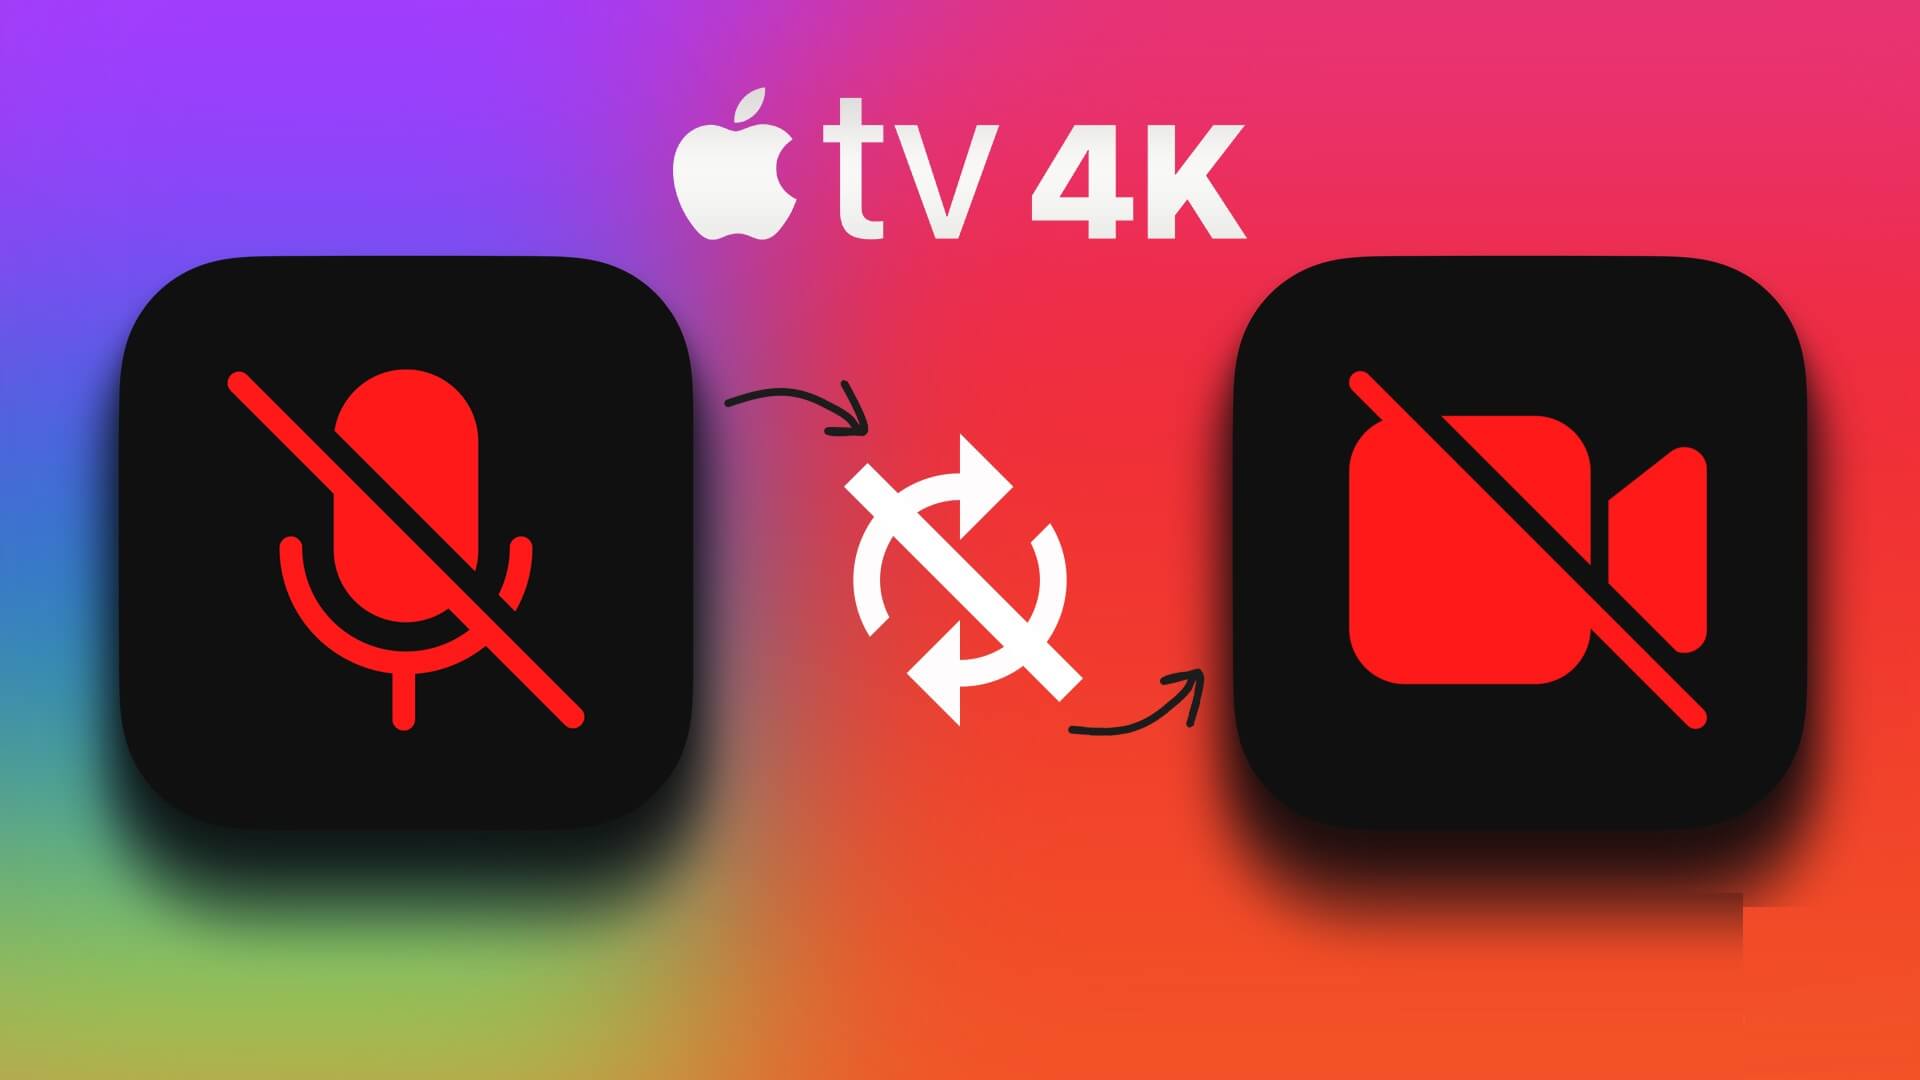 أفضل 7 إصلاحات لعدم مزامنة الصوت مع الفيديو على Apple TV 4K - %categories